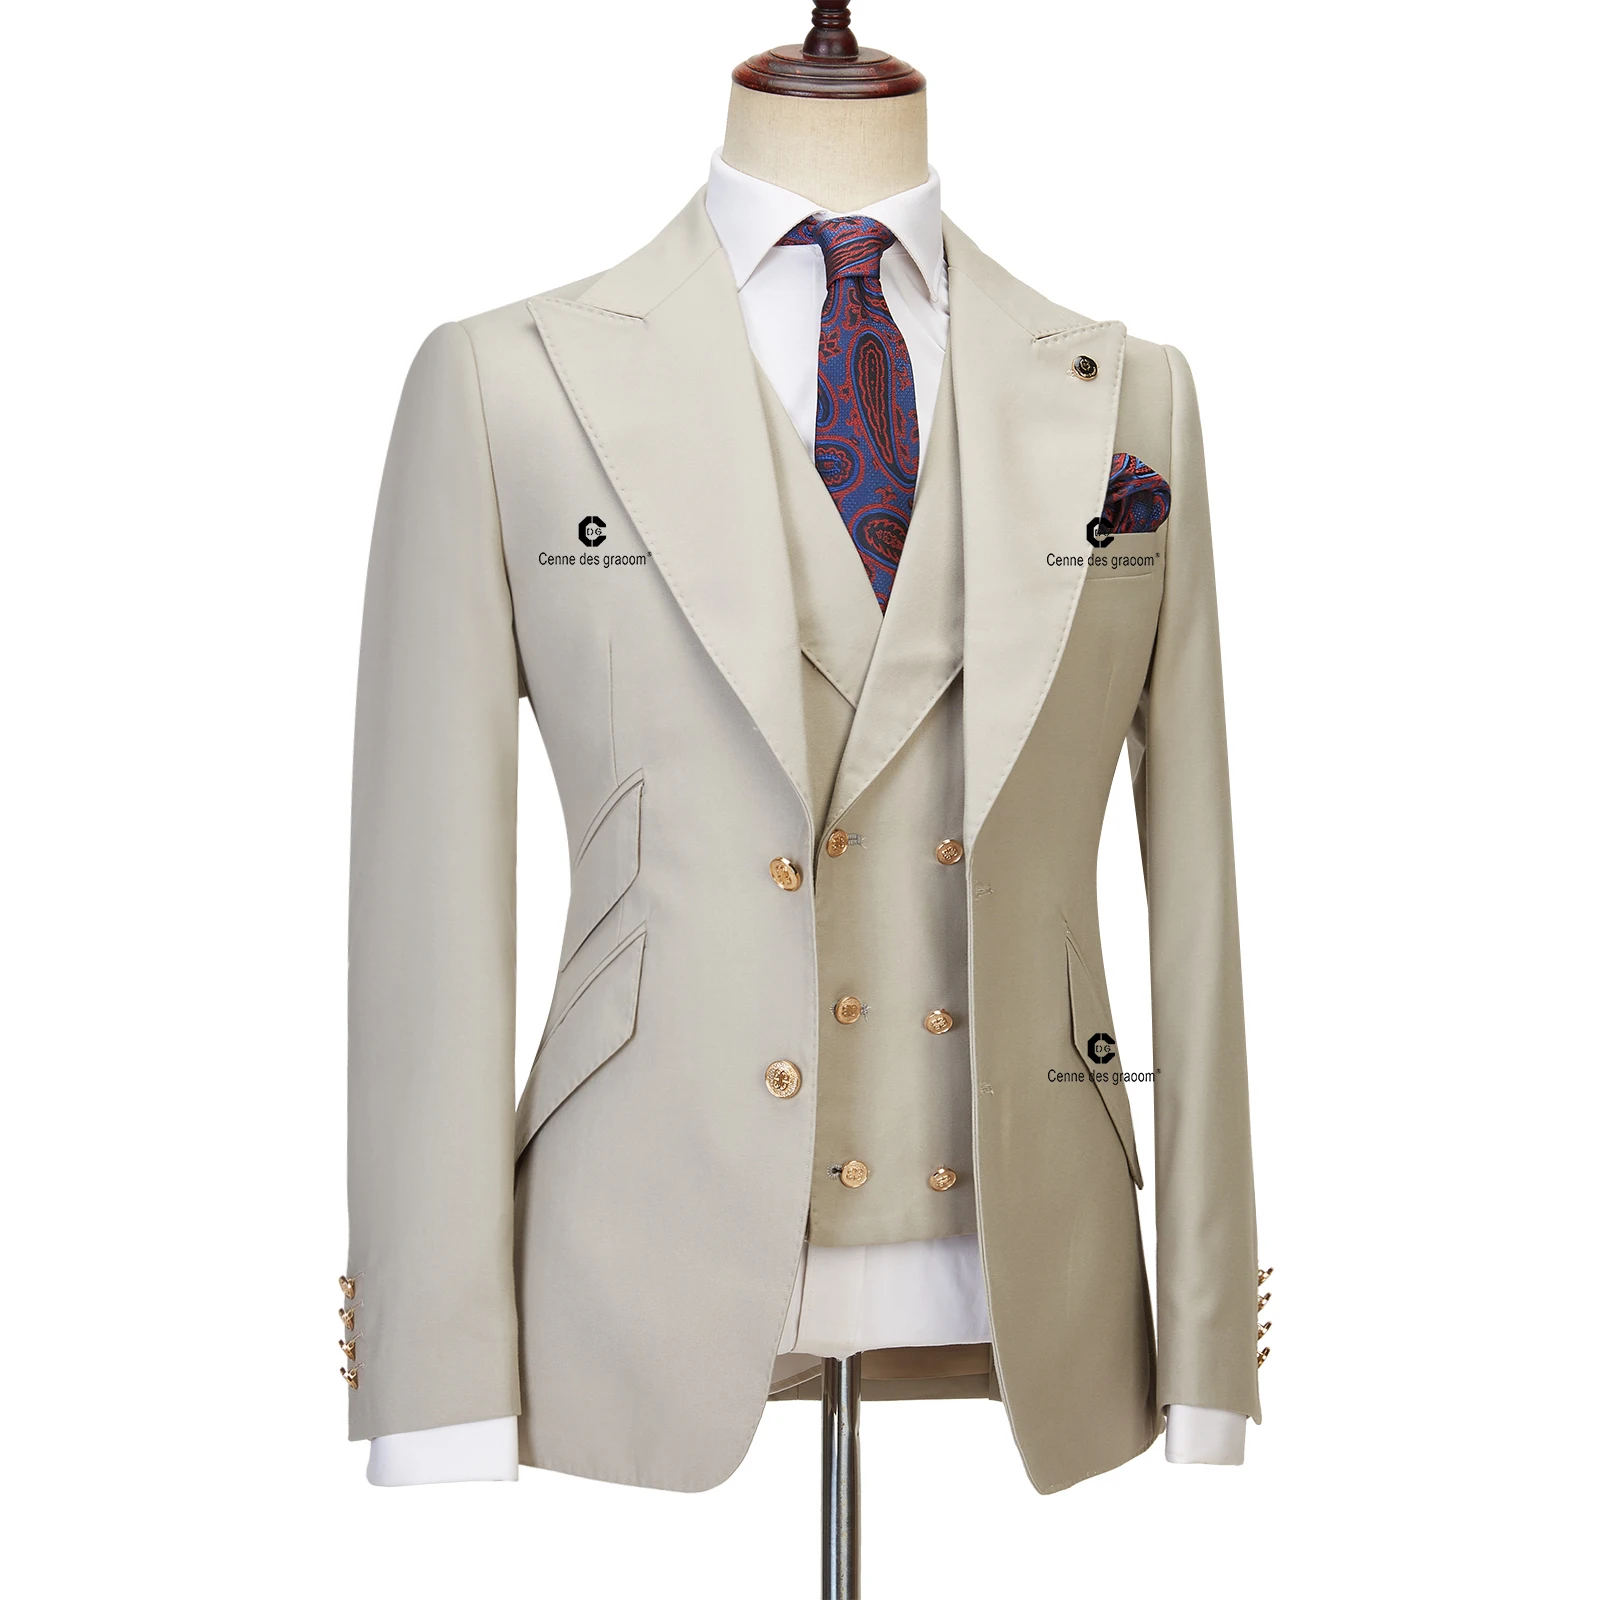 Traje ajustado de 3 piezas para hombre, chaqueta con solapa, chaleco, pantalones, des graoom Cenne, boda, negocios, cena